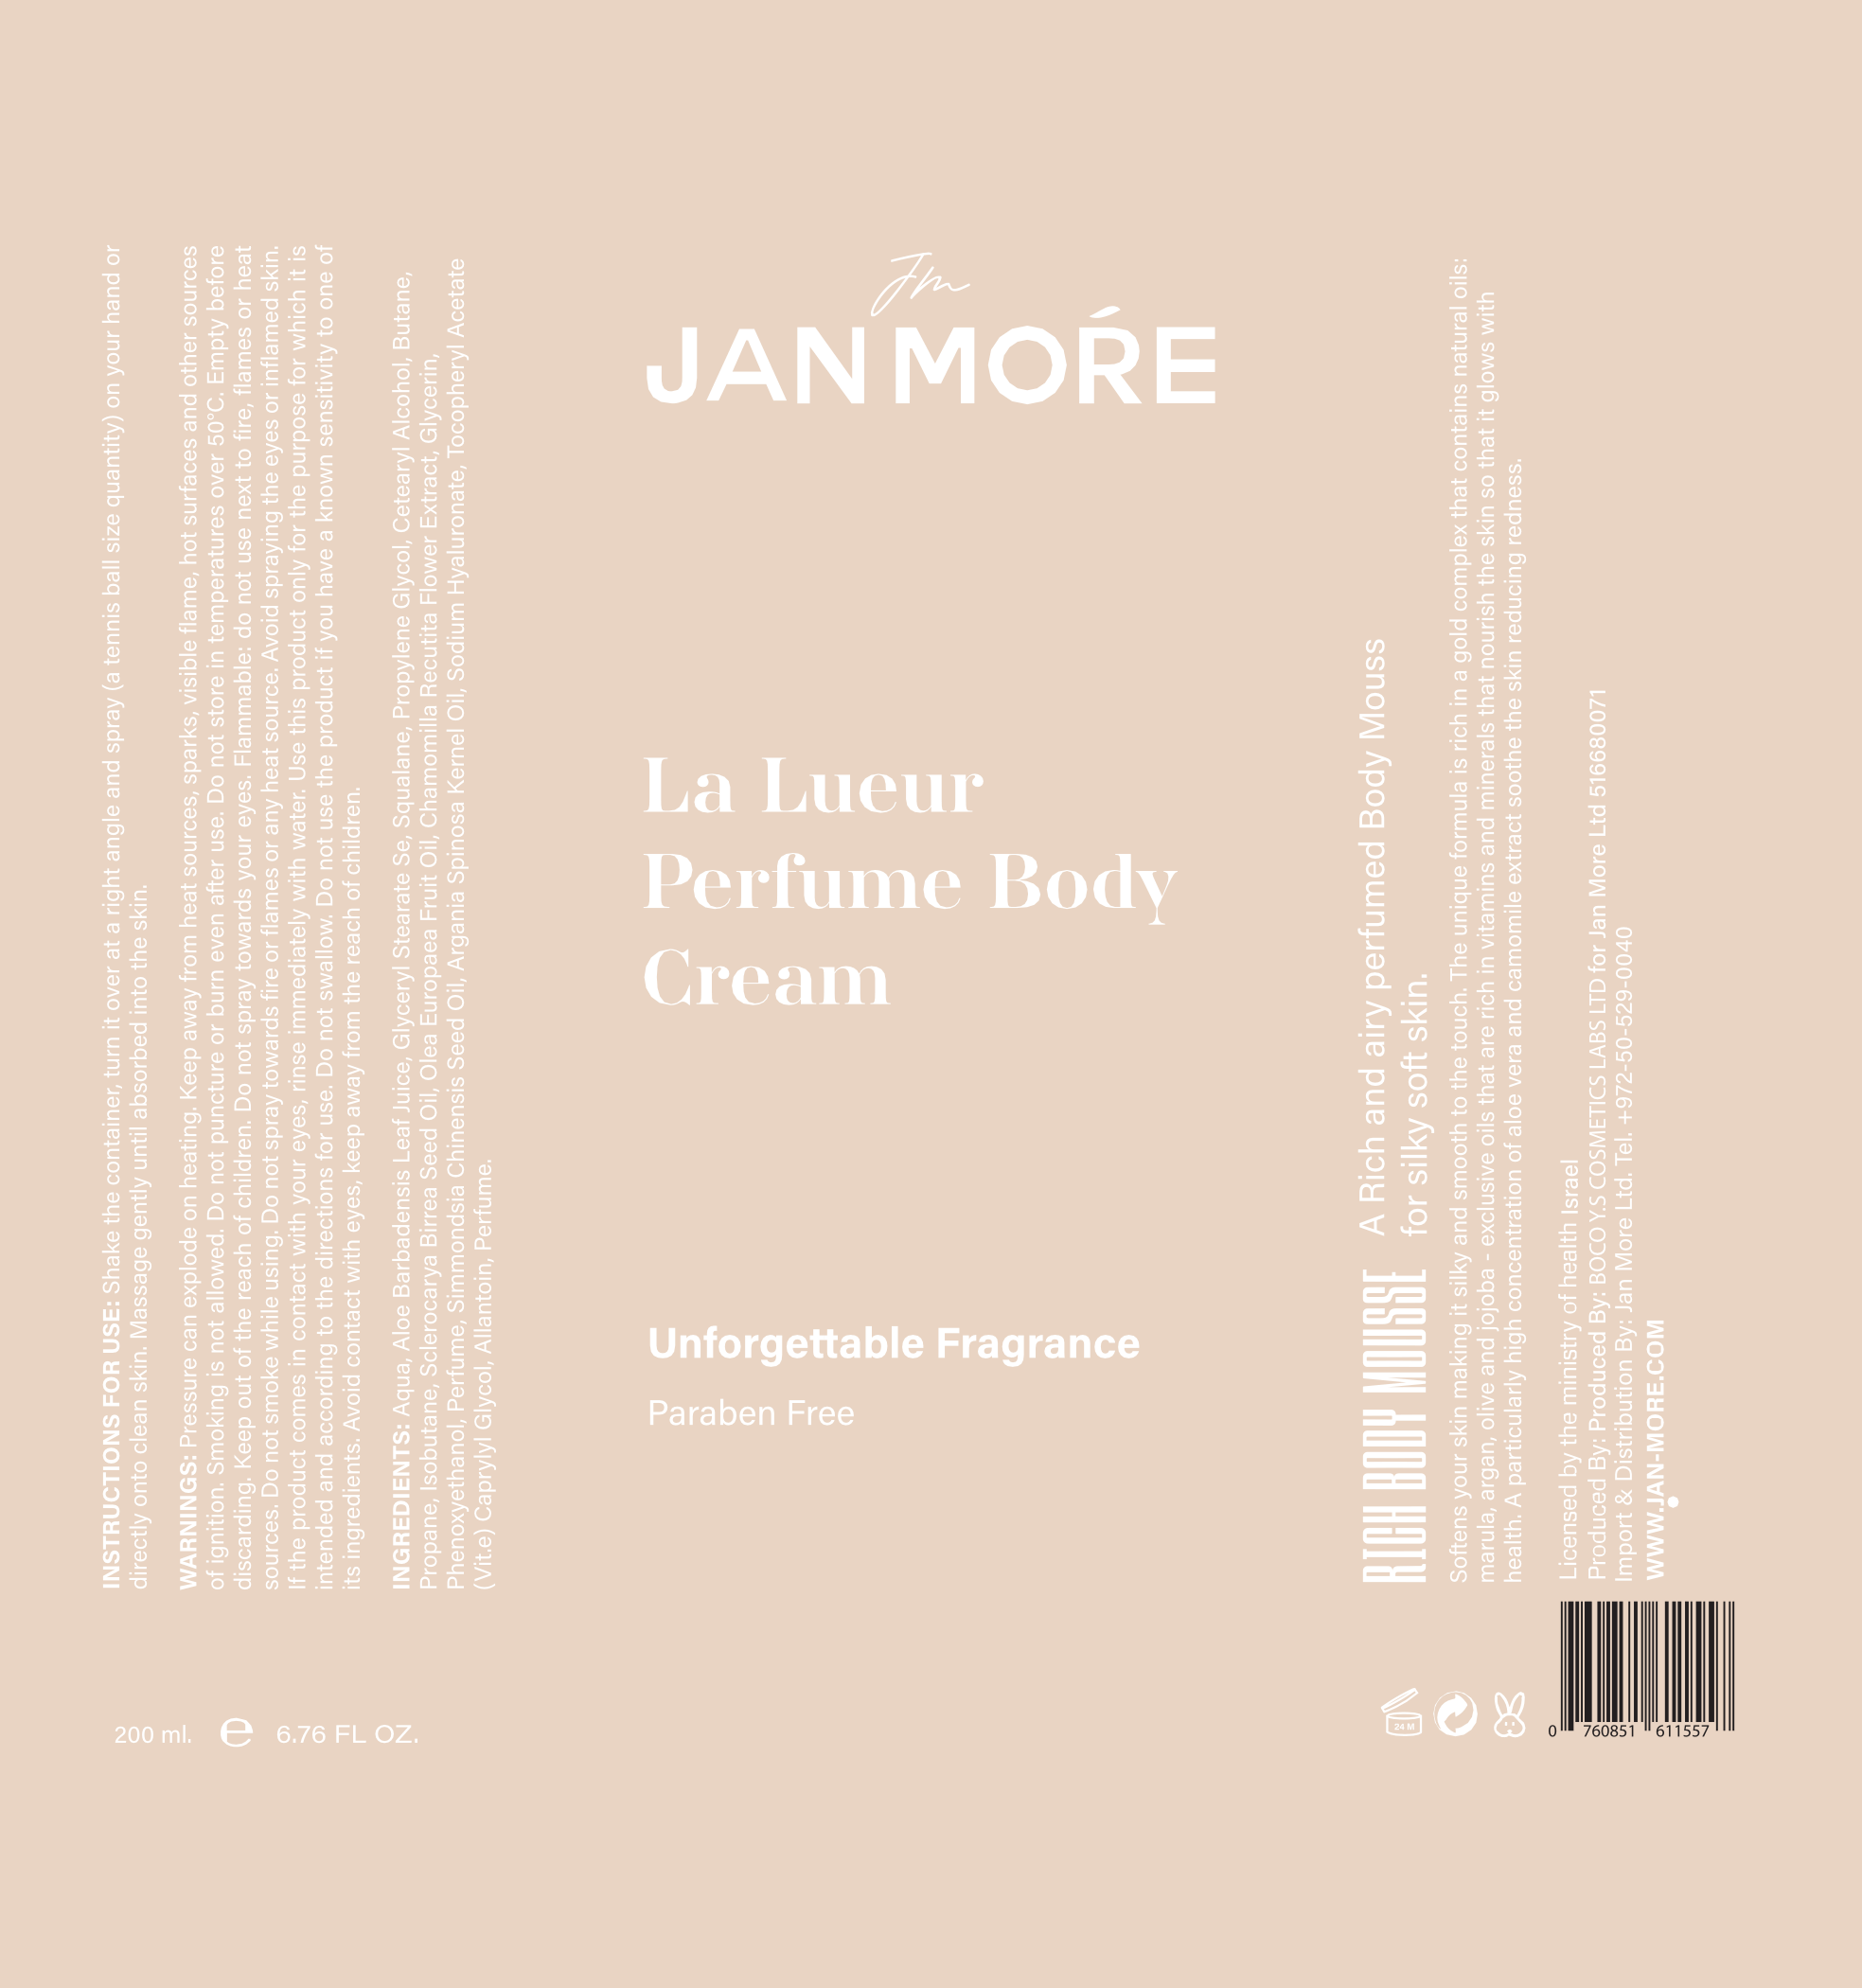 Product label - La Lueur body mousse